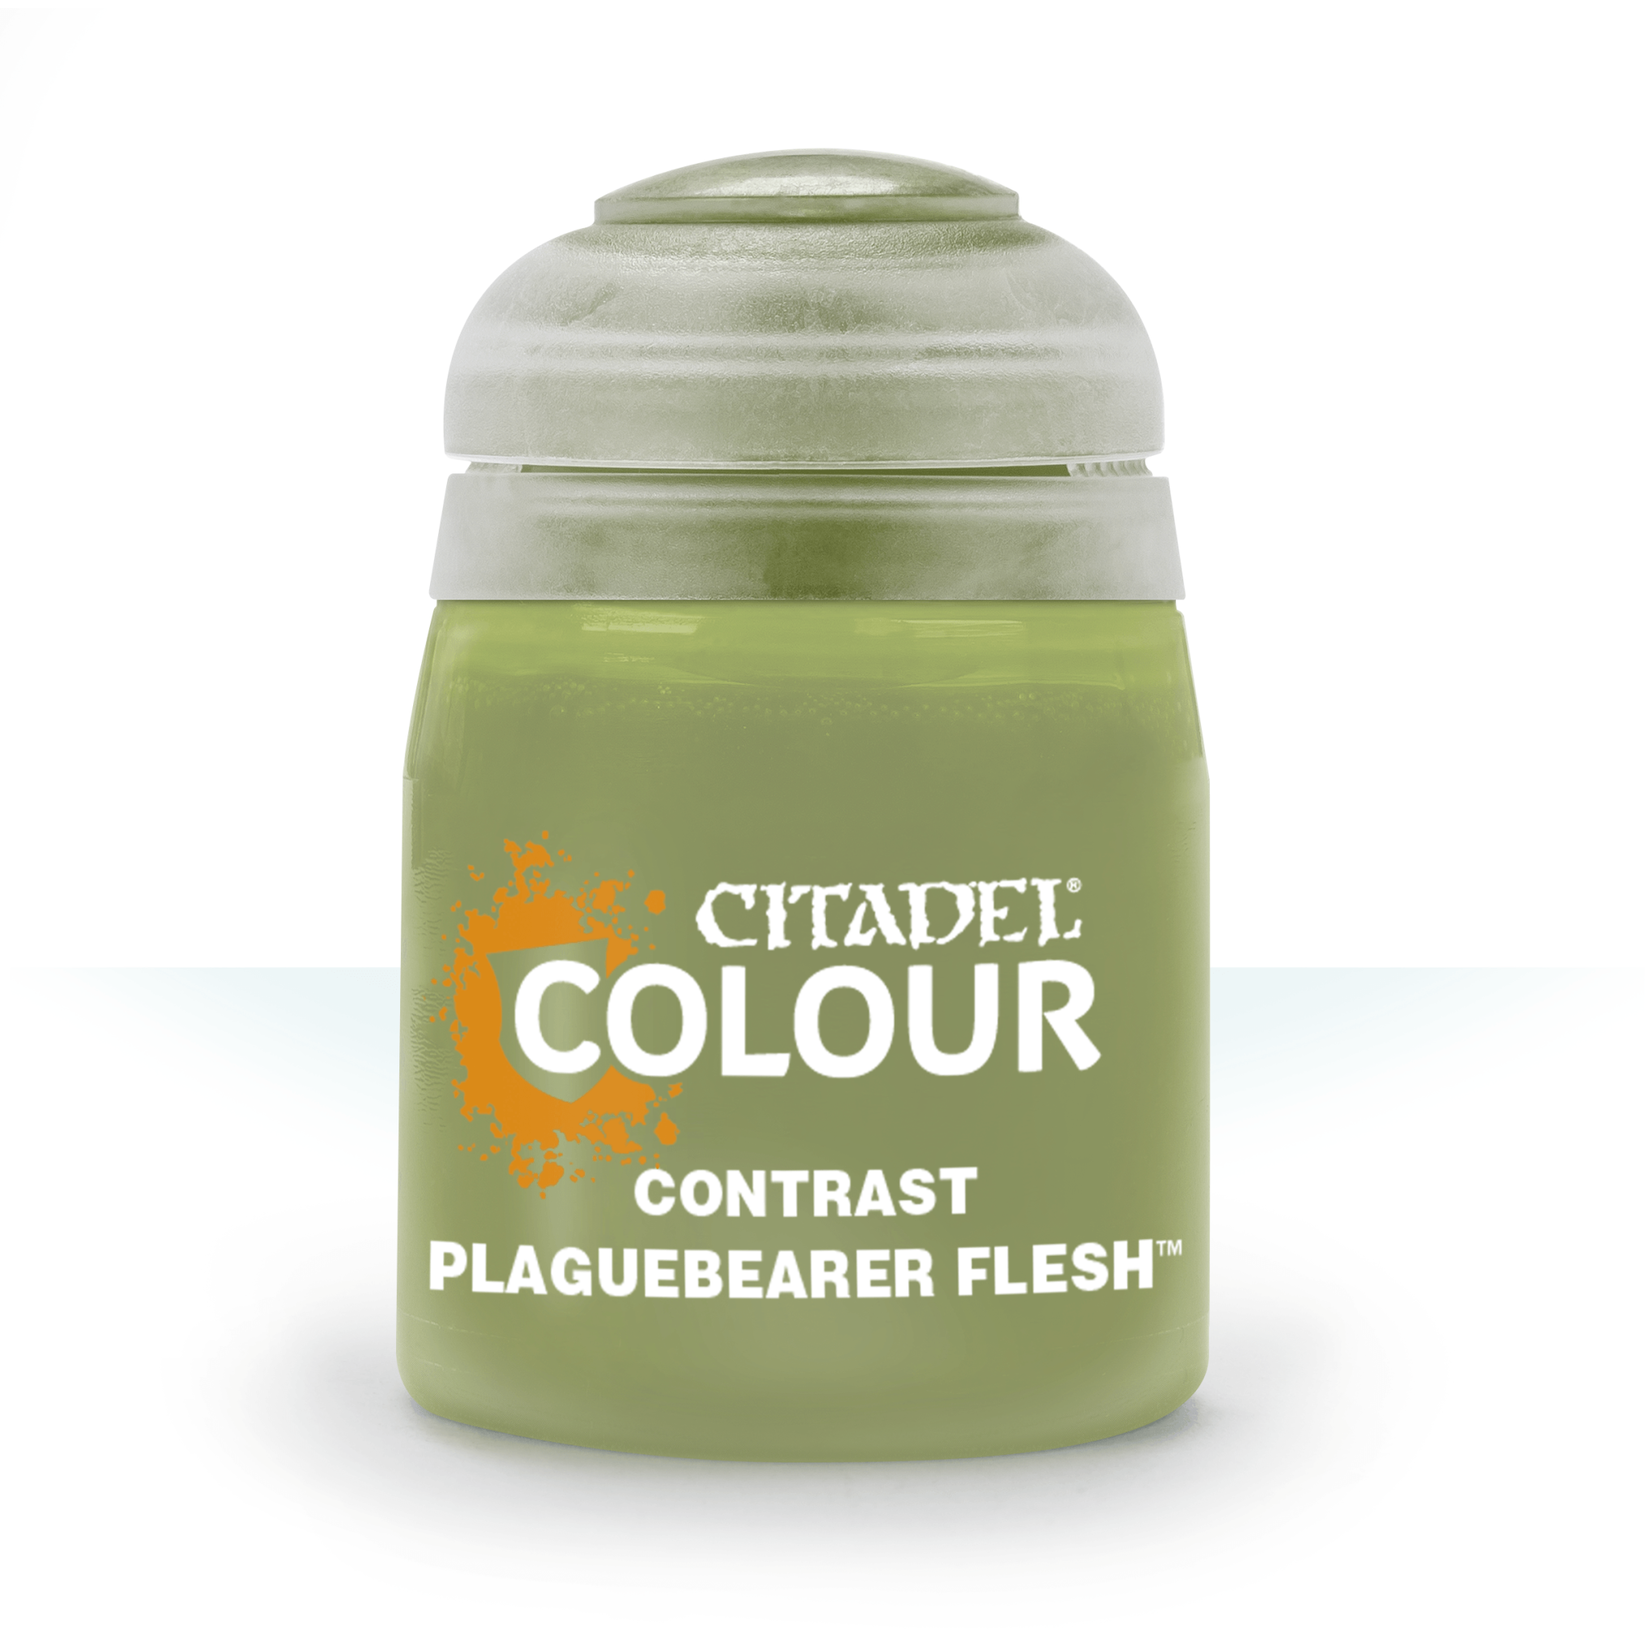 Citadel Contrast Plaguebearer Flesh 18ml pot